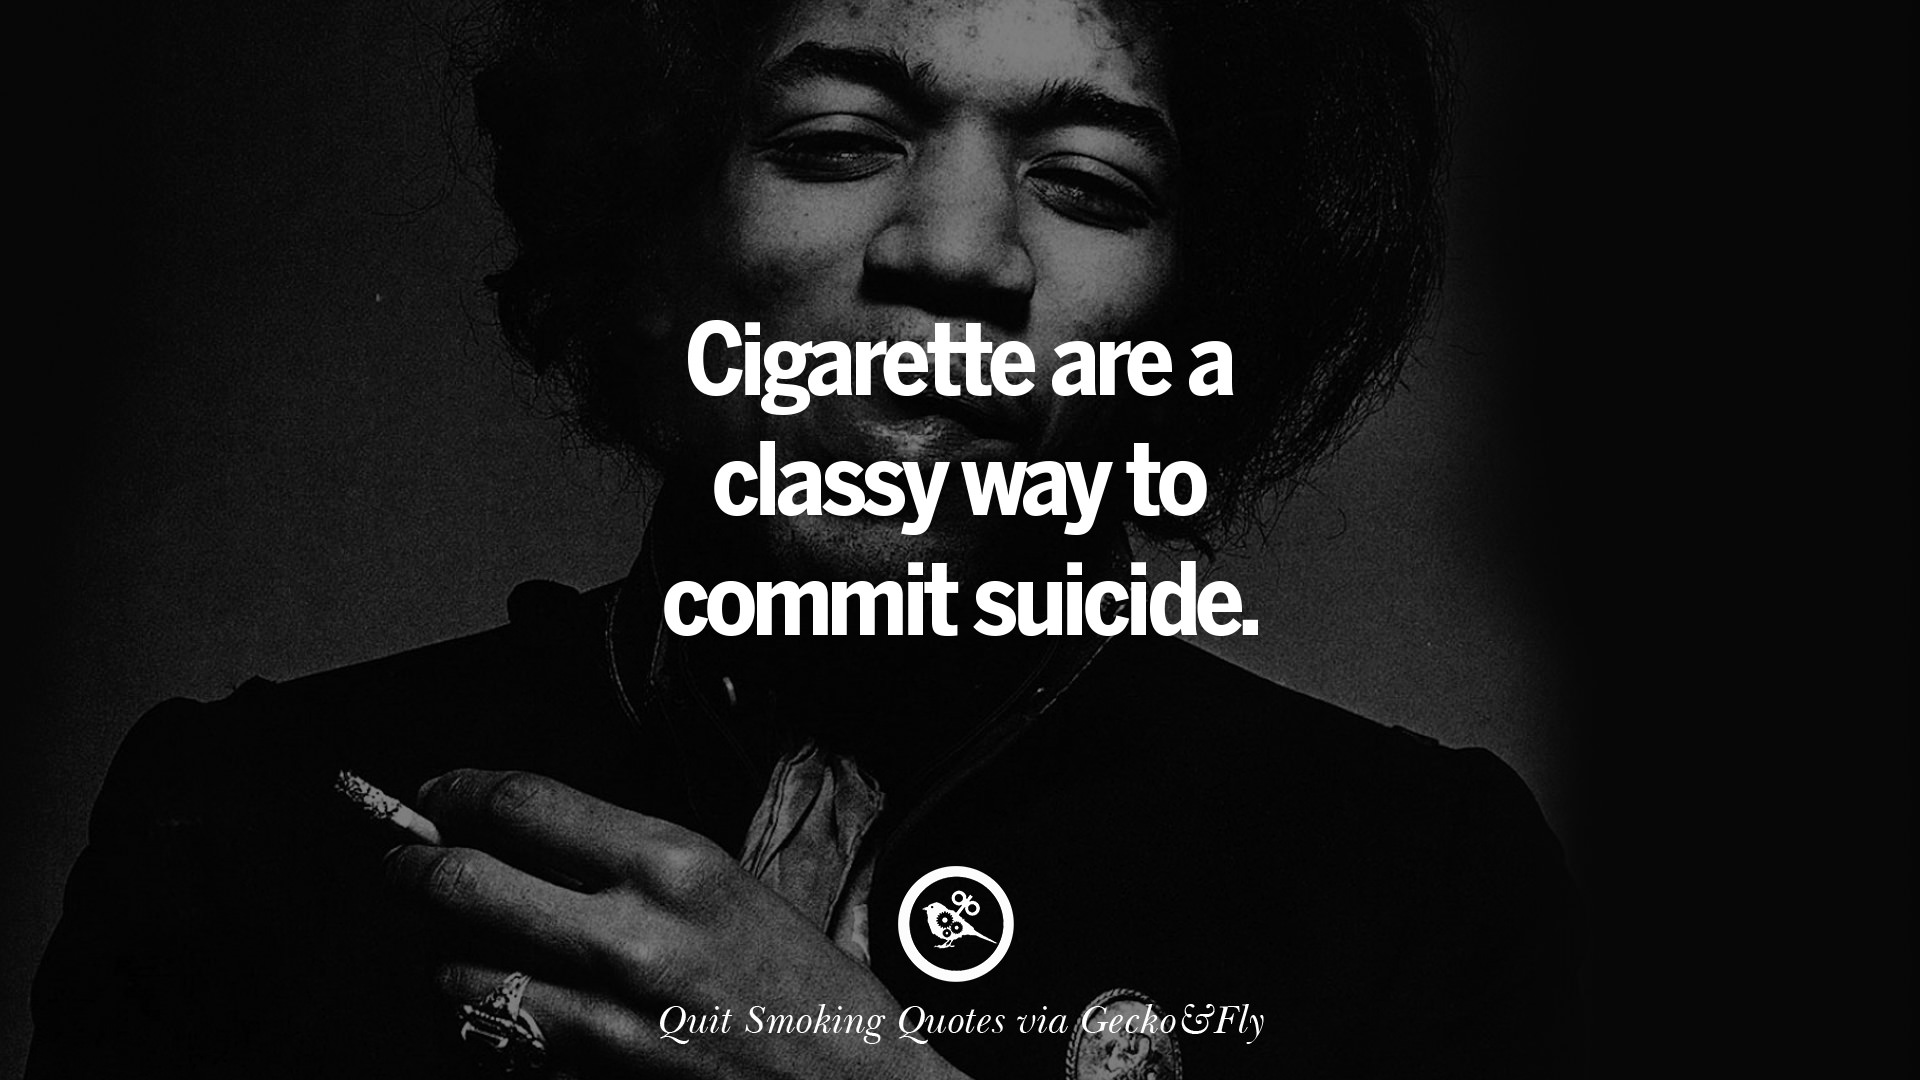 quit smoking quotes 02